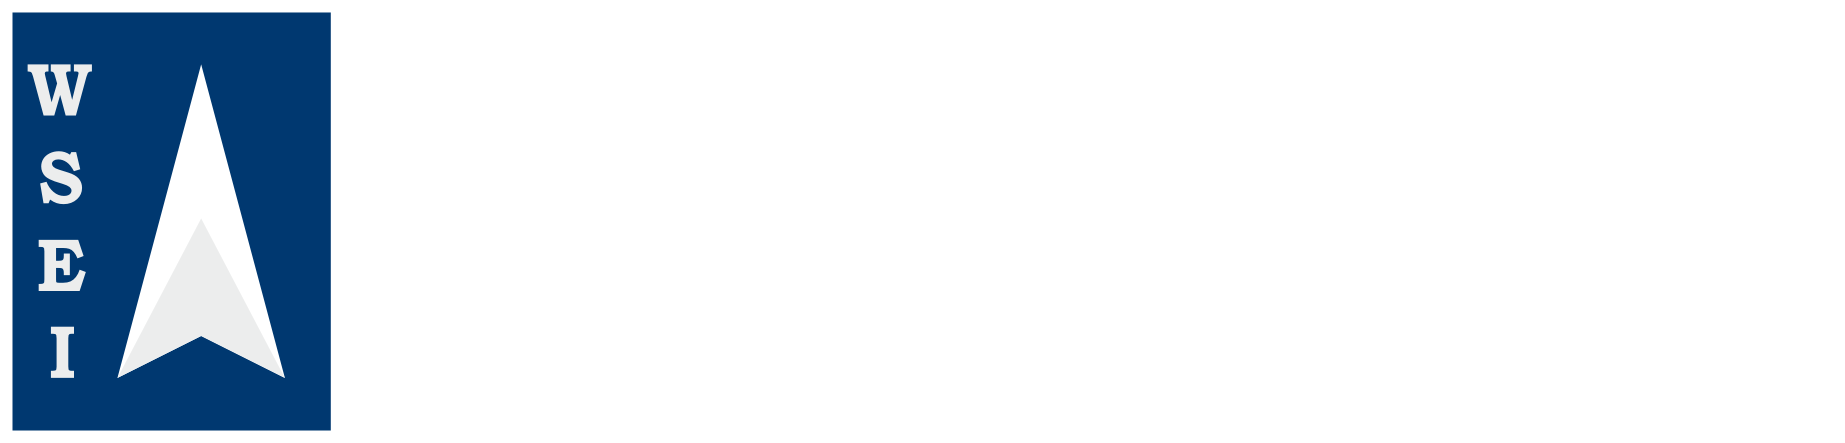 Logo WSEI Białe